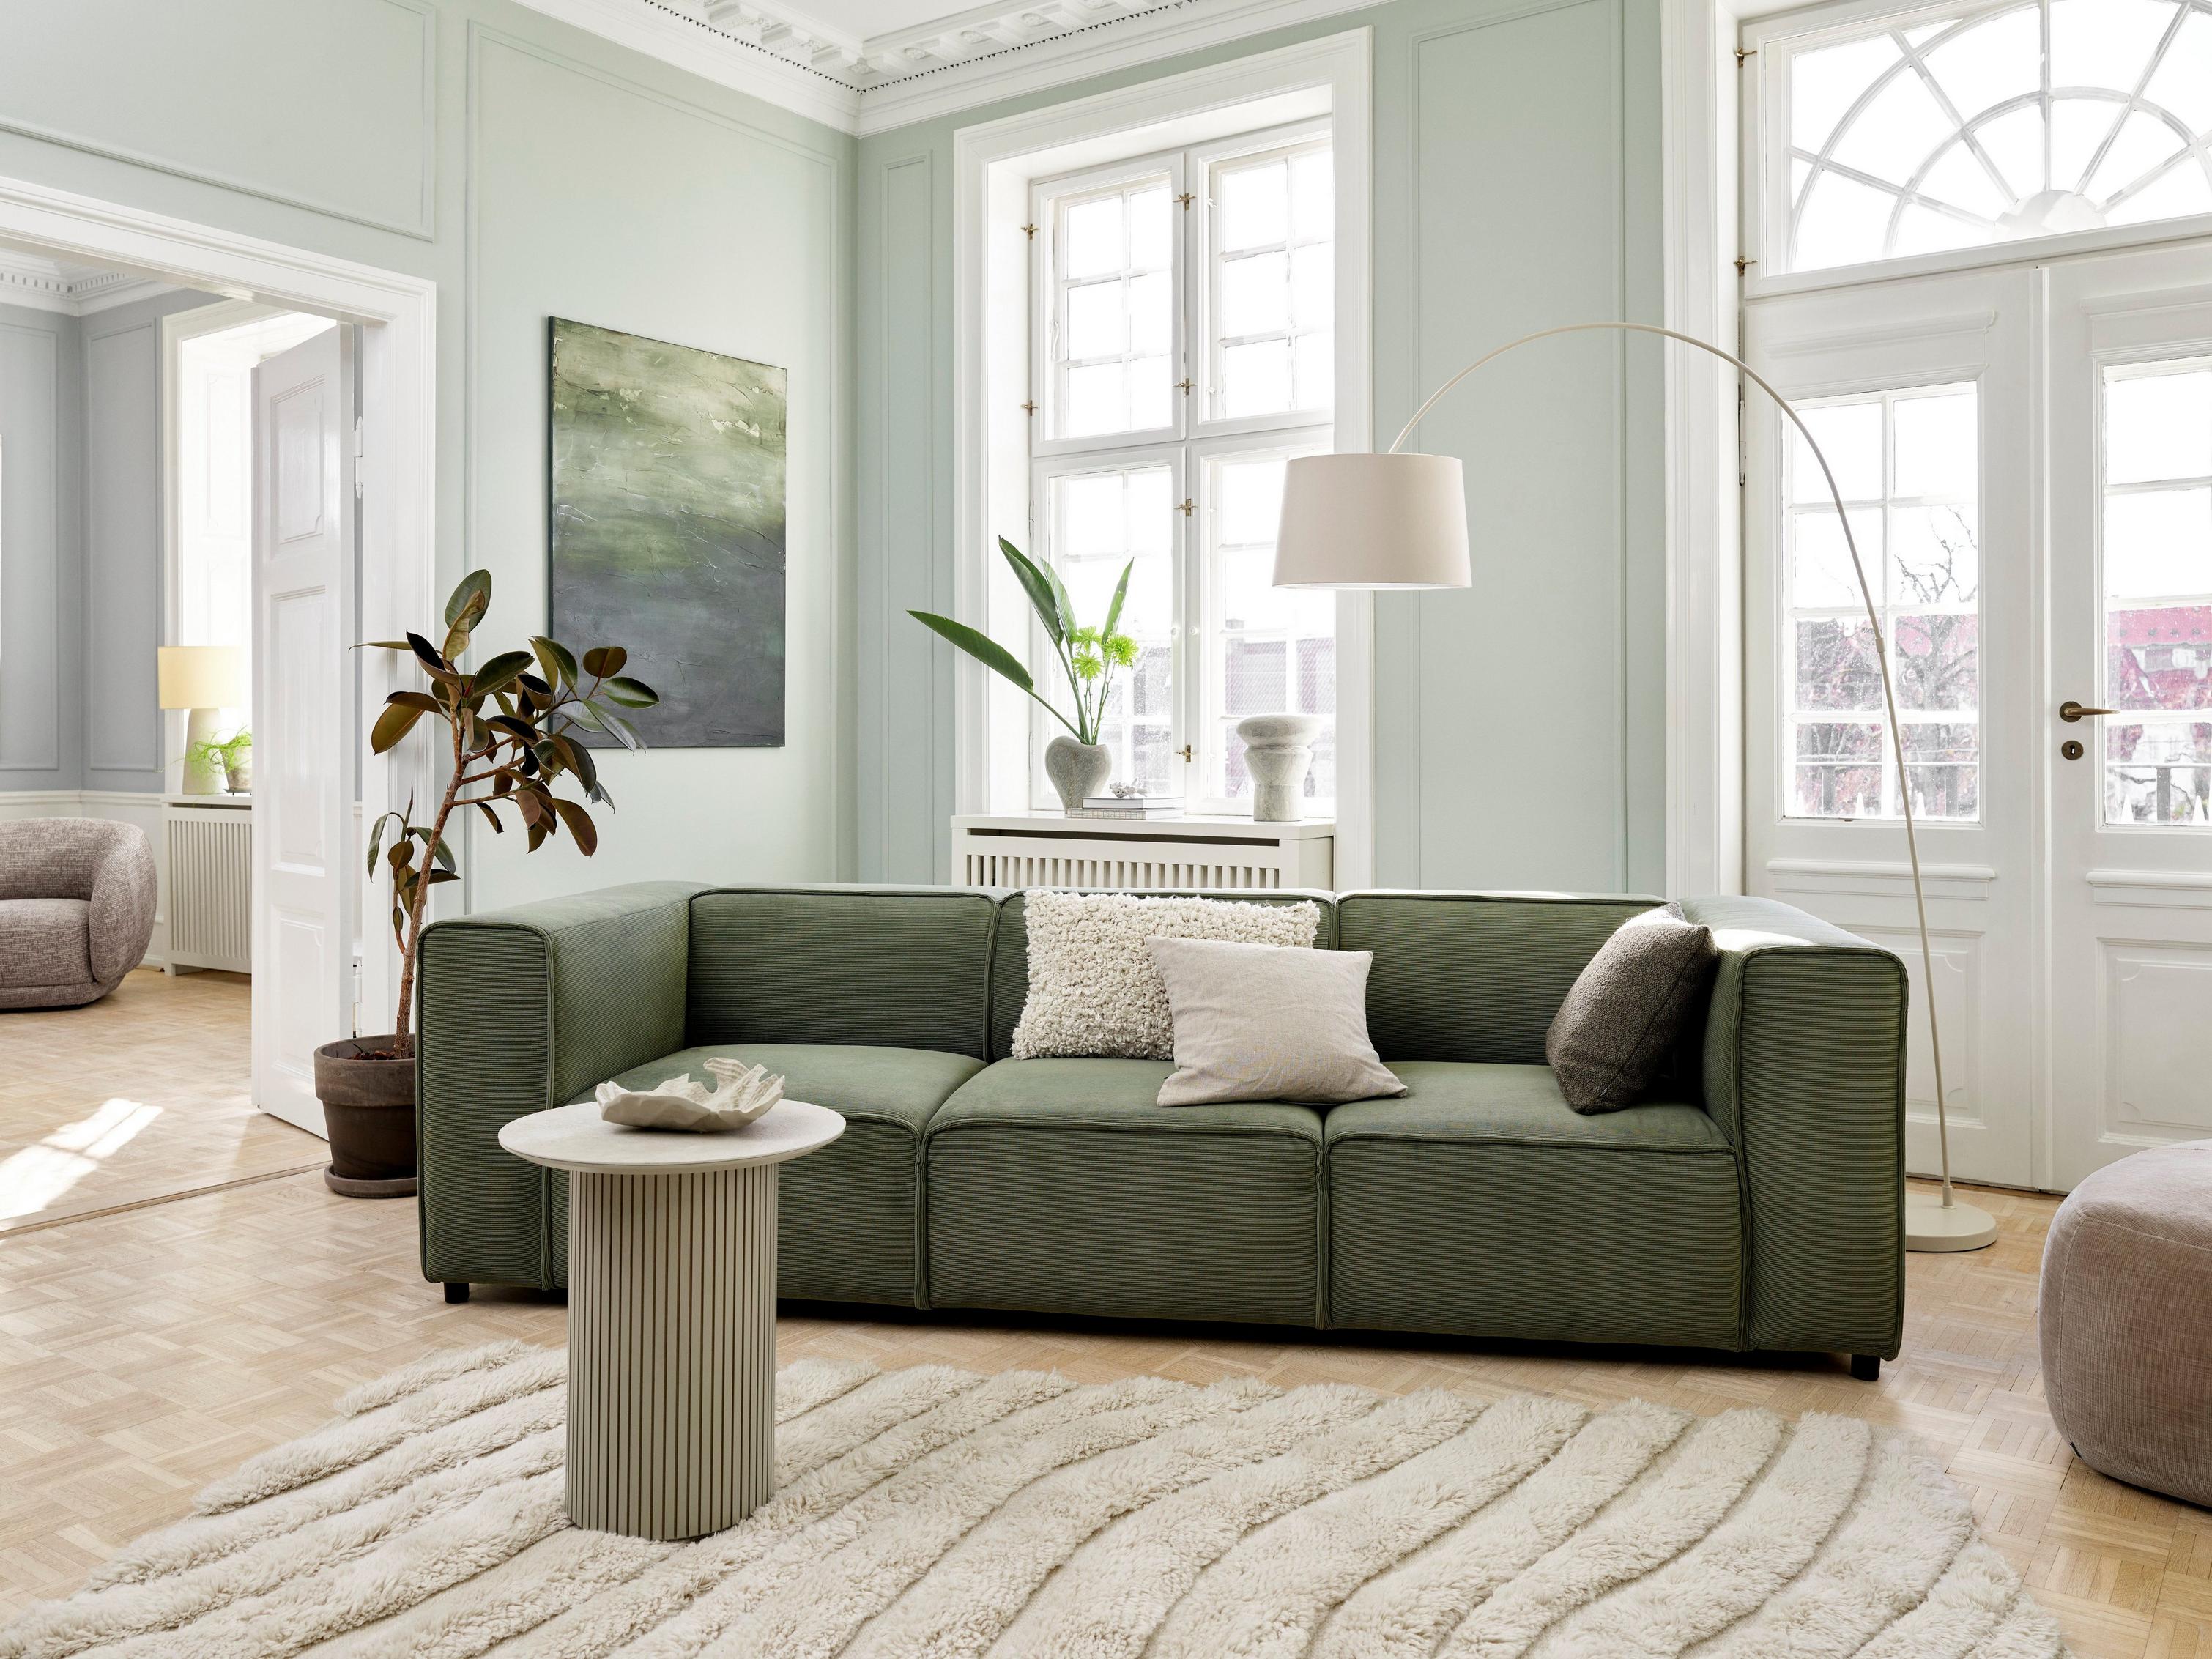 Ett Japandi-inspirerat vardagsrum med soffan Carmo i grönt Skagen-tyg.